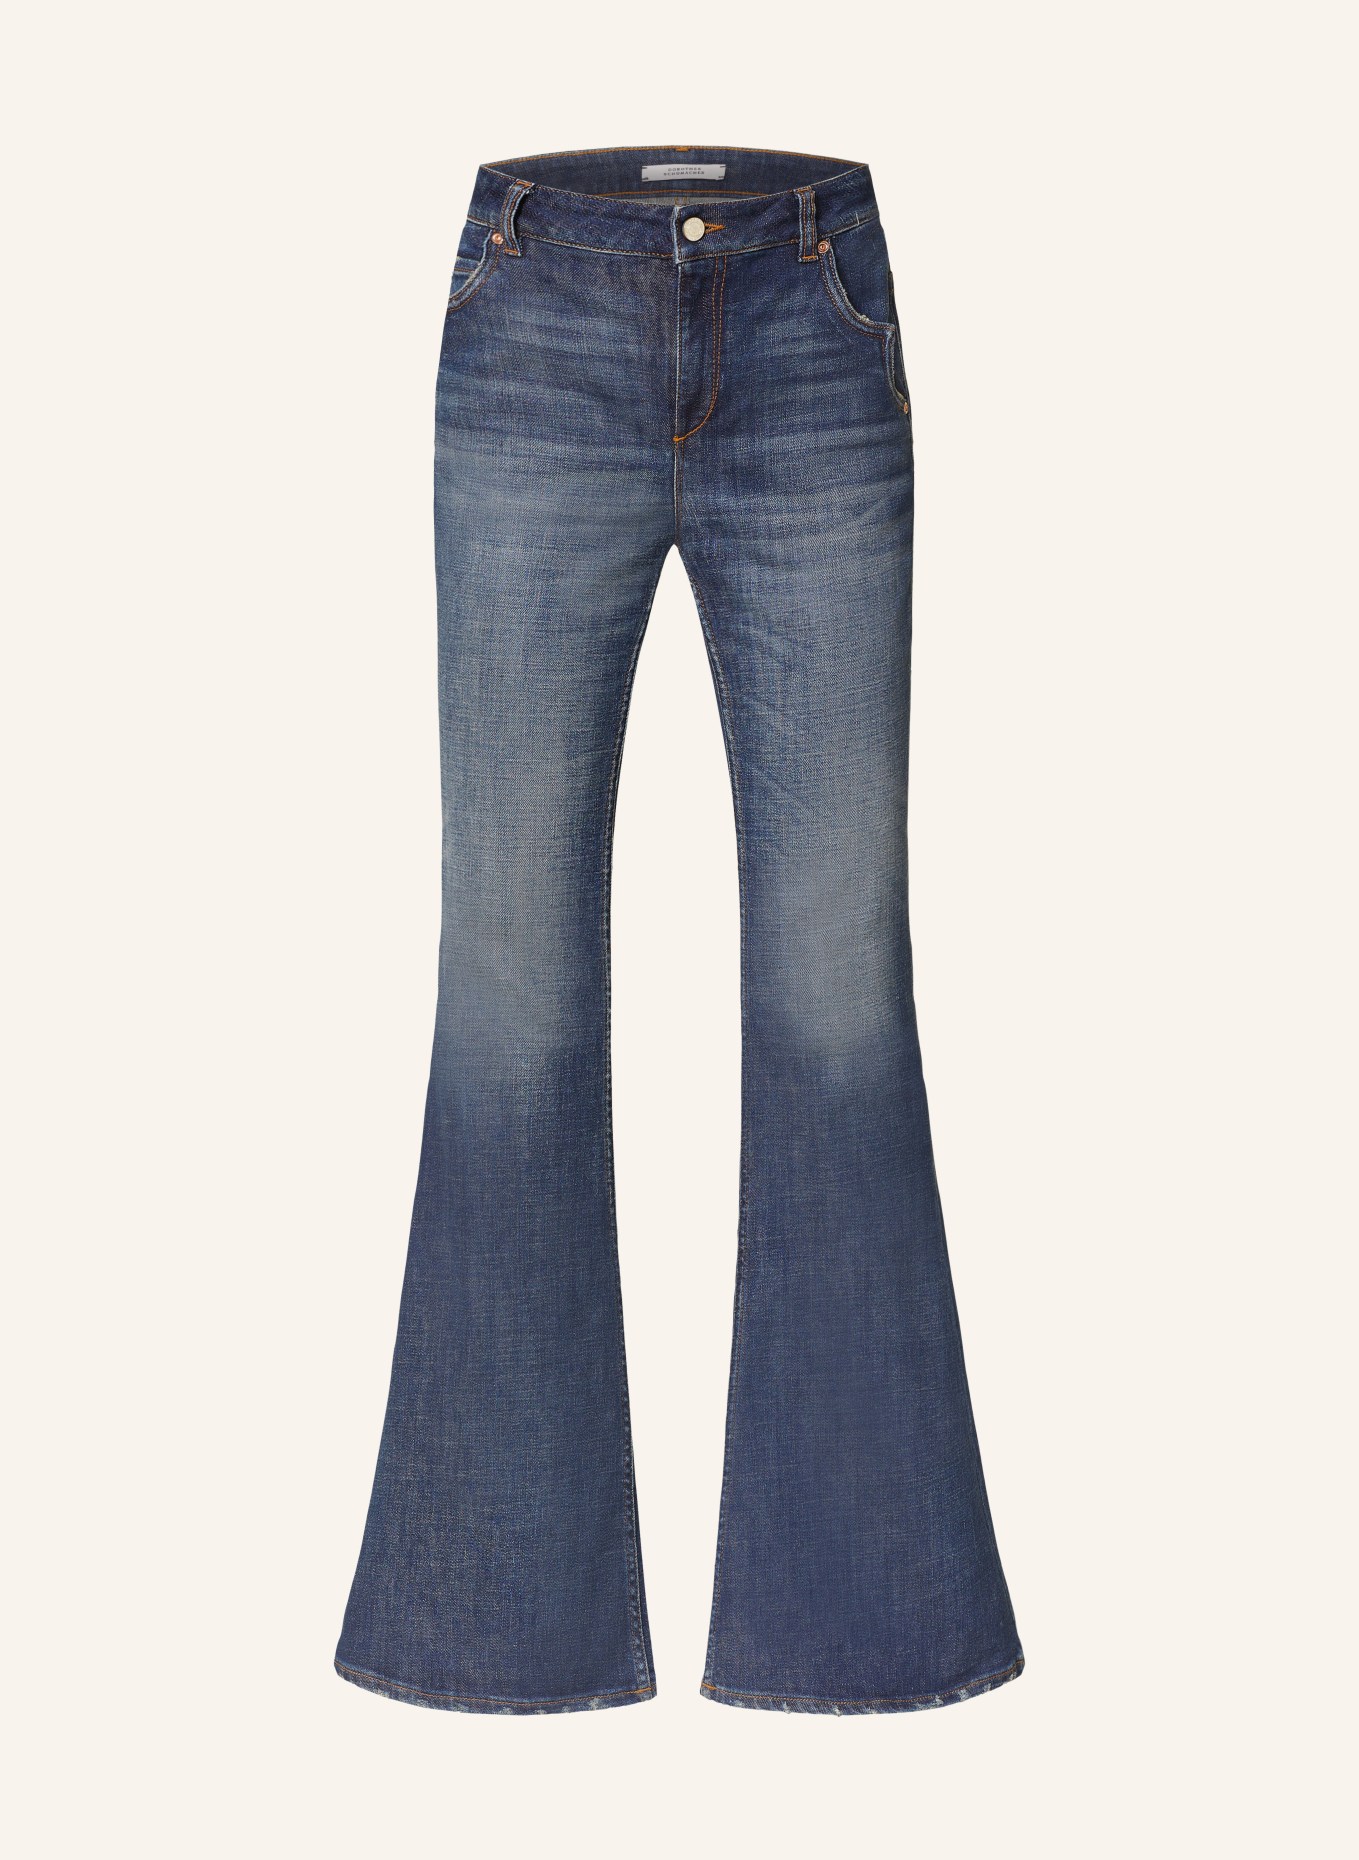 DOROTHEE SCHUMACHER Flared jeans DENIM LOVE PANTS, Color: 872 Denim (Image 1)